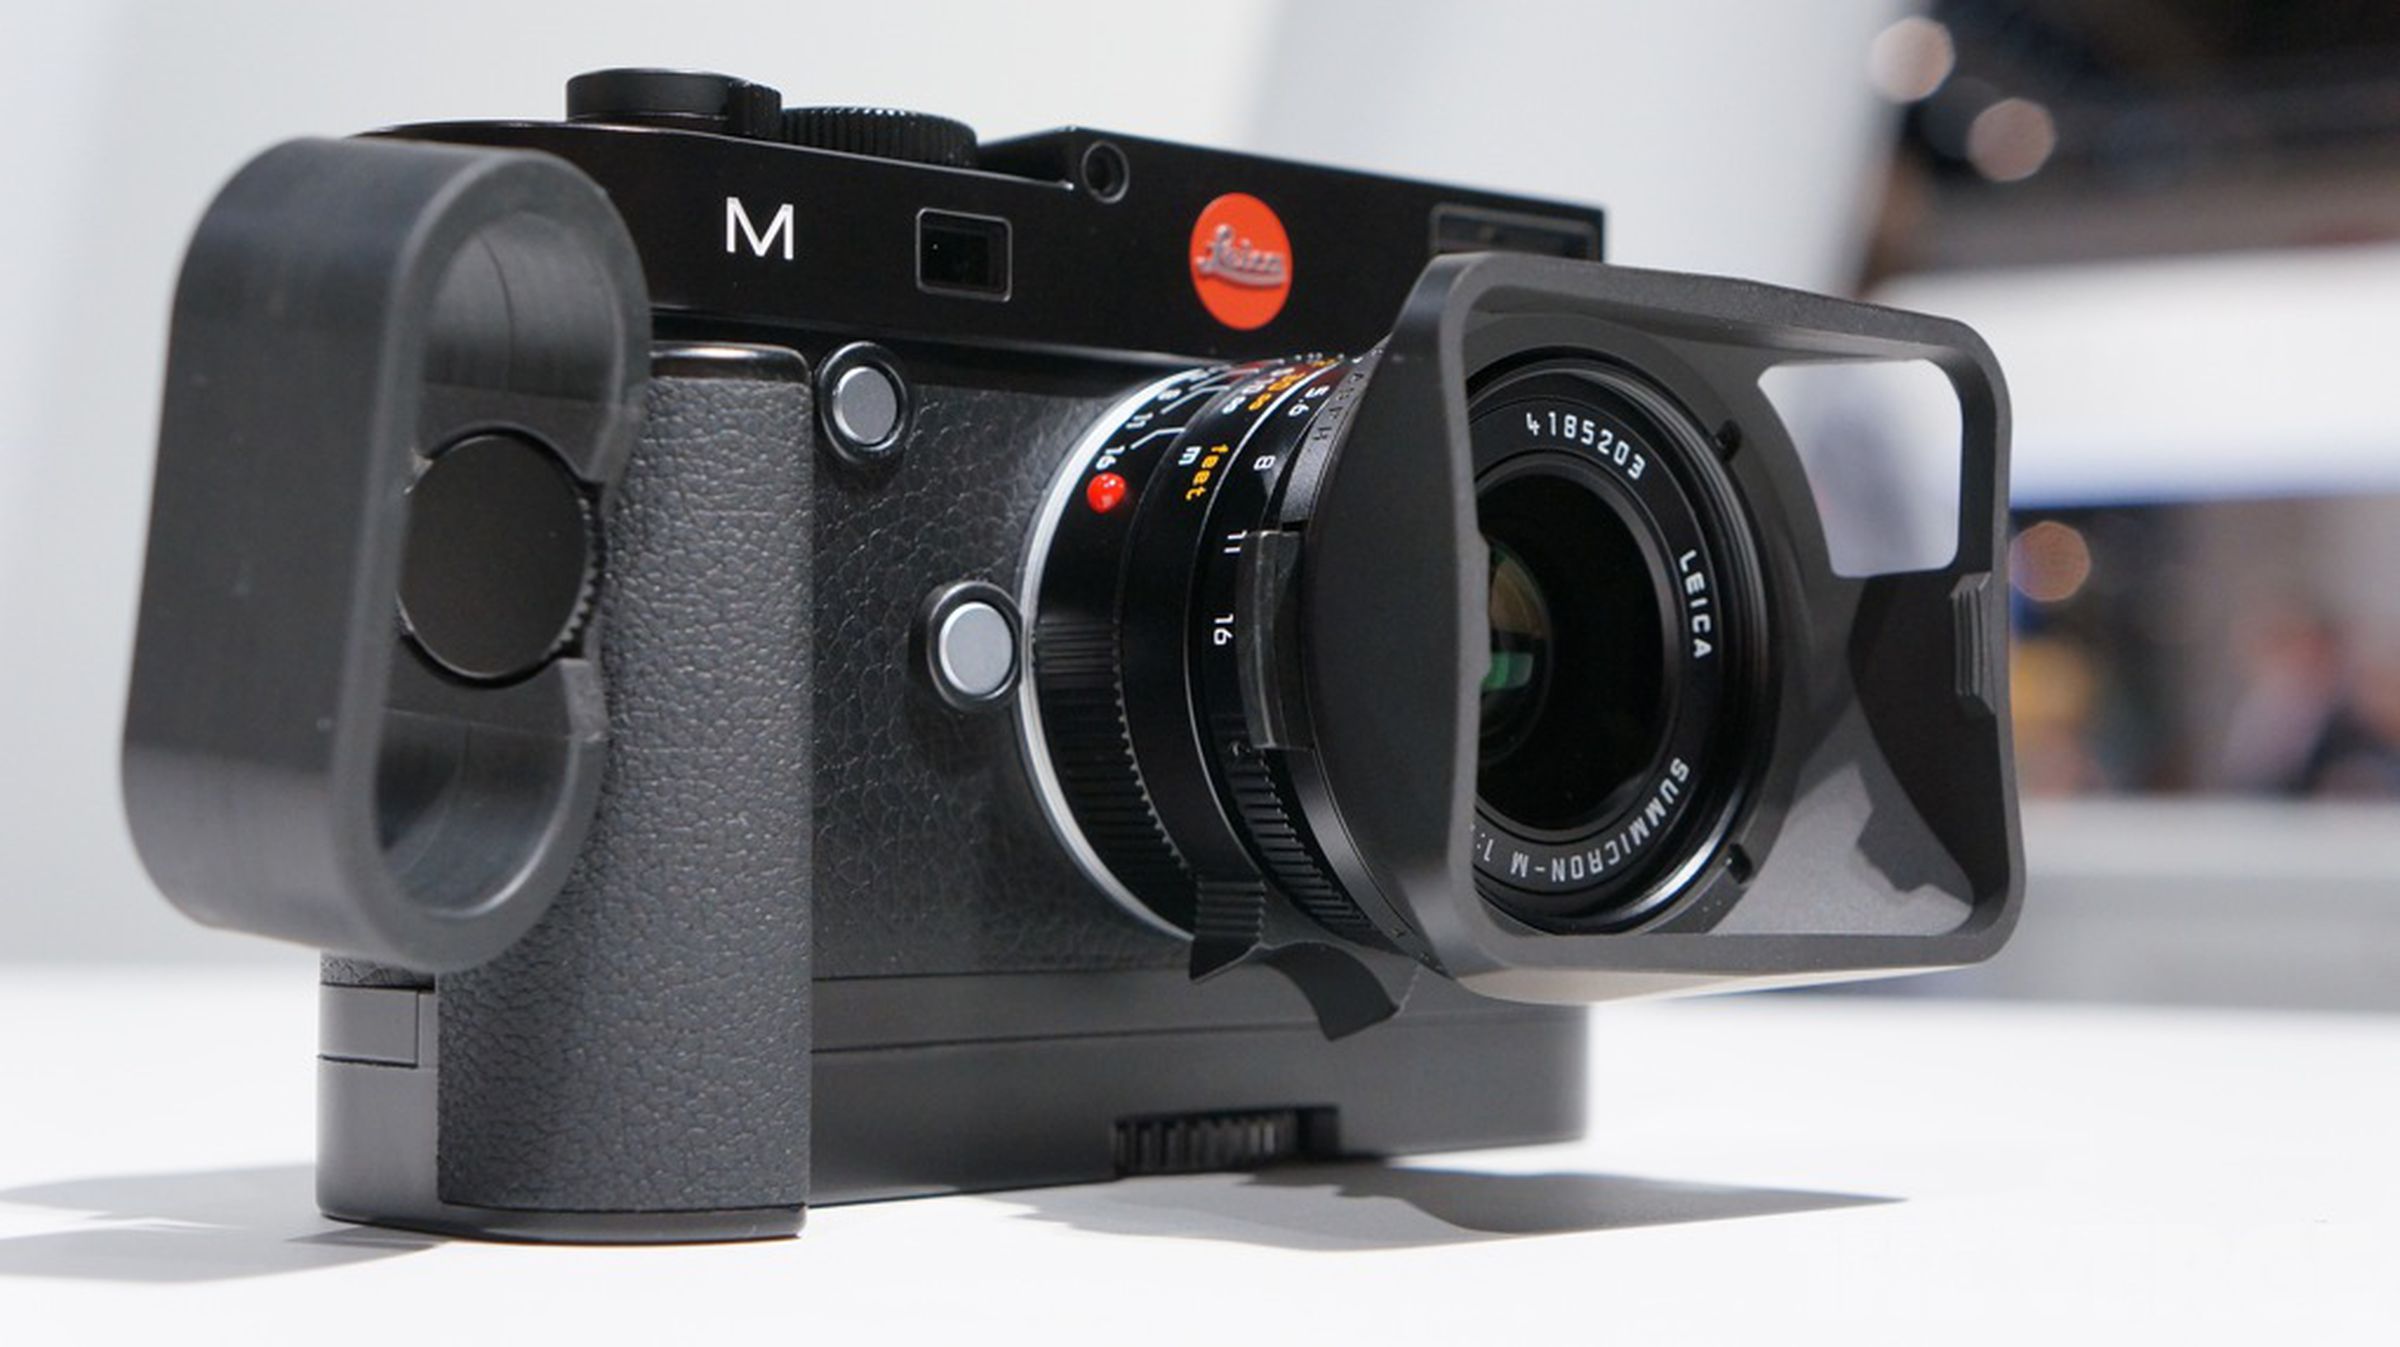 Leica M hands-on photos